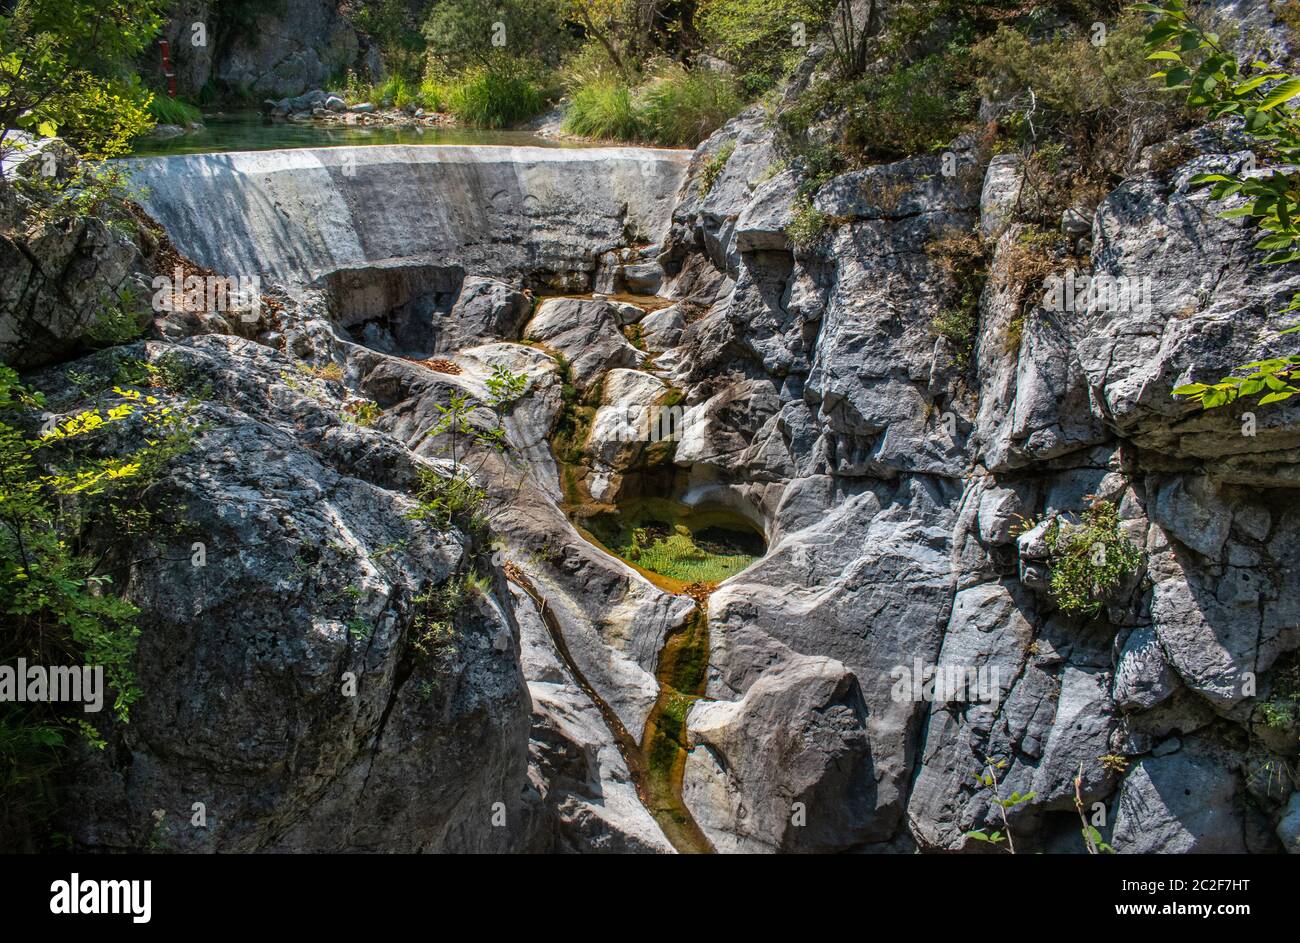 Die Badewanne des Zeus, der Gott des Olymp, Litochoro, Griechenland. Der Fluss ist die Quelle von Wasser für die Bevölkerung in der Nähe. Stockfoto